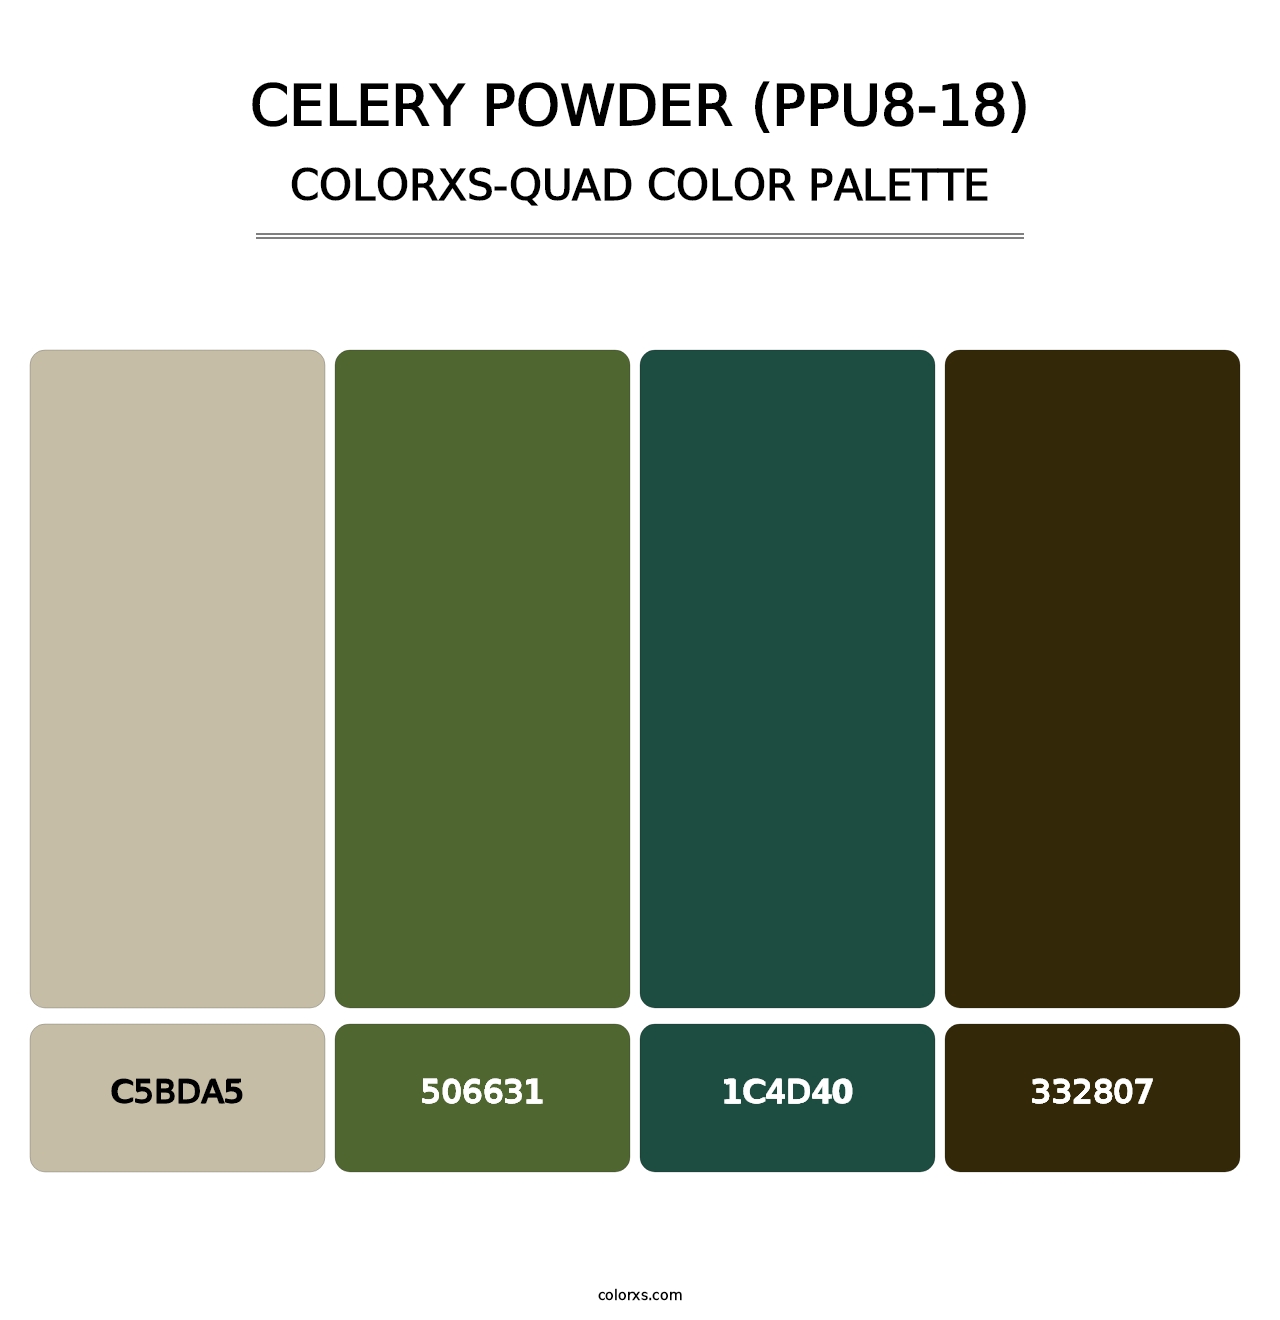 Celery Powder (PPU8-18) - Colorxs Quad Palette